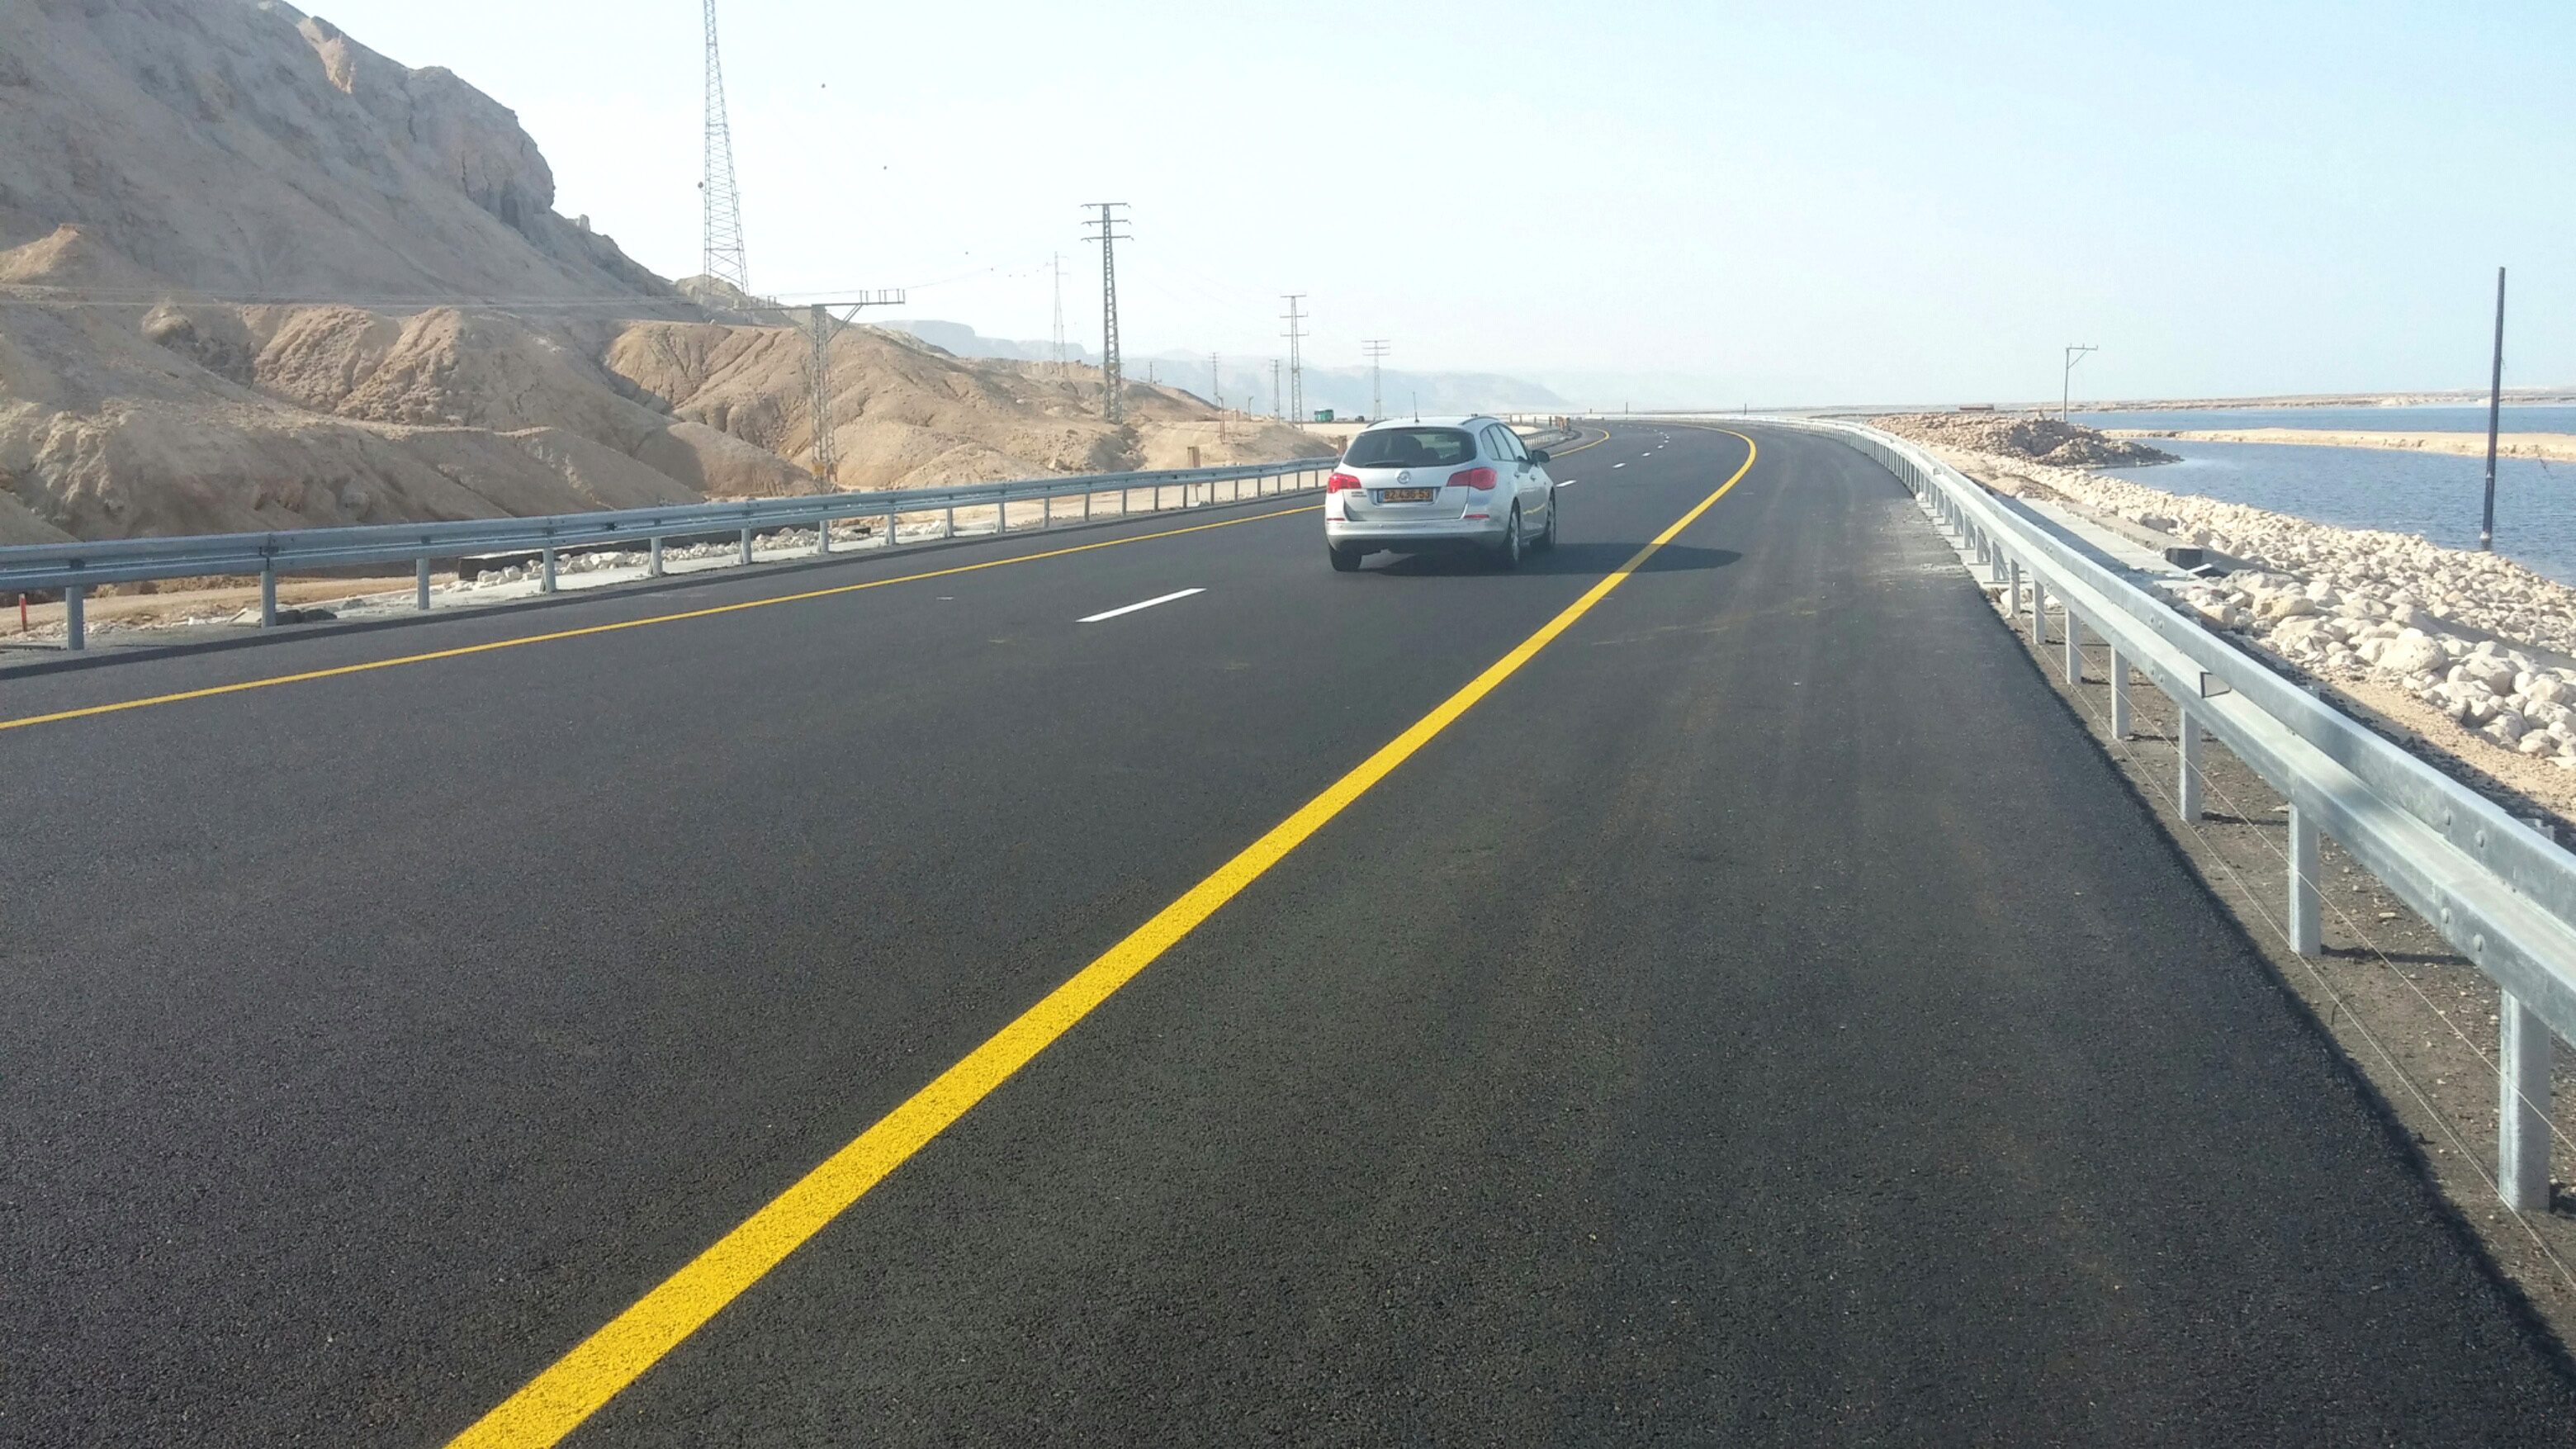 תמונה לטלפון נייד מתארת לכתבה פרויקט הגבהת כביש 90 מקטע דרומי הסתיים - עובר לידי אחזקת חברת נתיבי ישראל